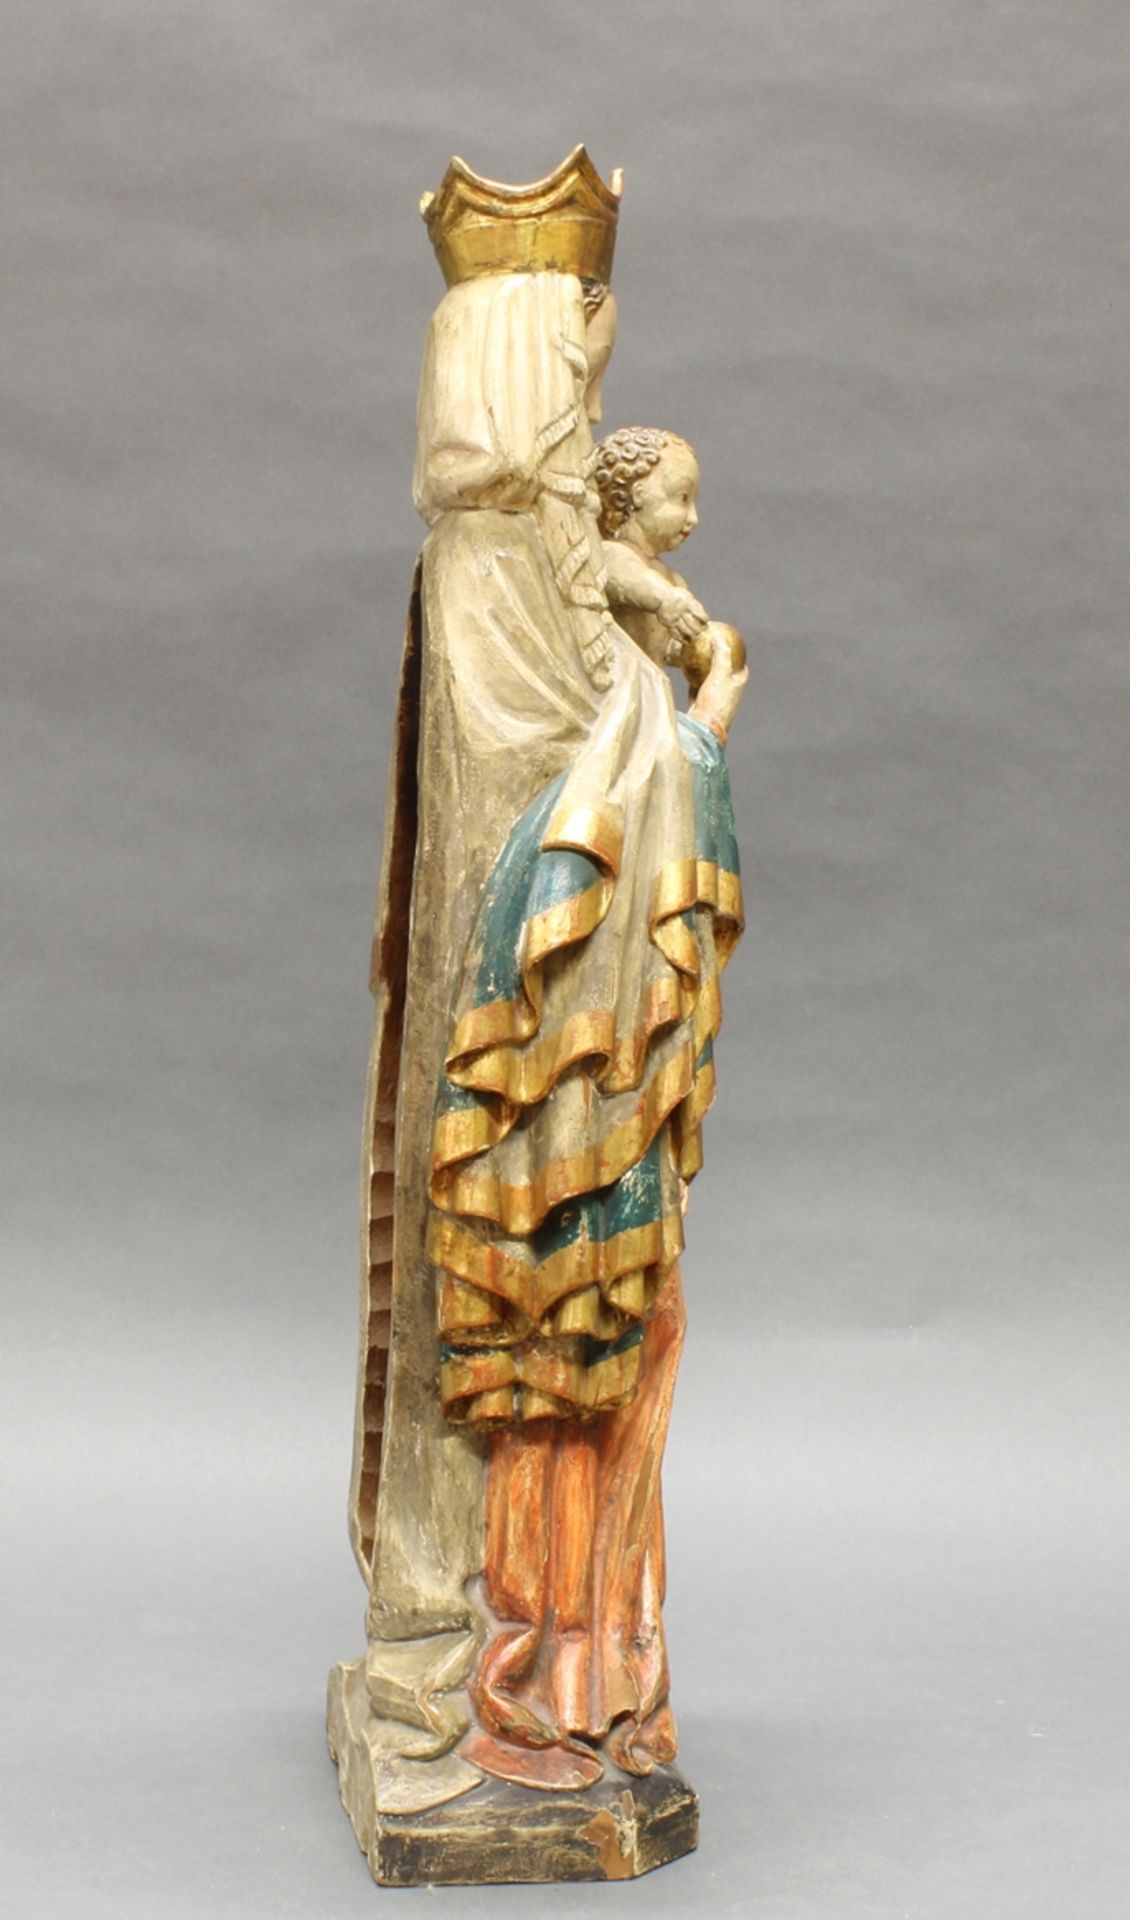 Skulptur, Holz geschnitzt, "Schöne Madonna", im gotischen Stil, 20. Jh., 73 cm hoch, verso gehöhlt, - Bild 4 aus 5